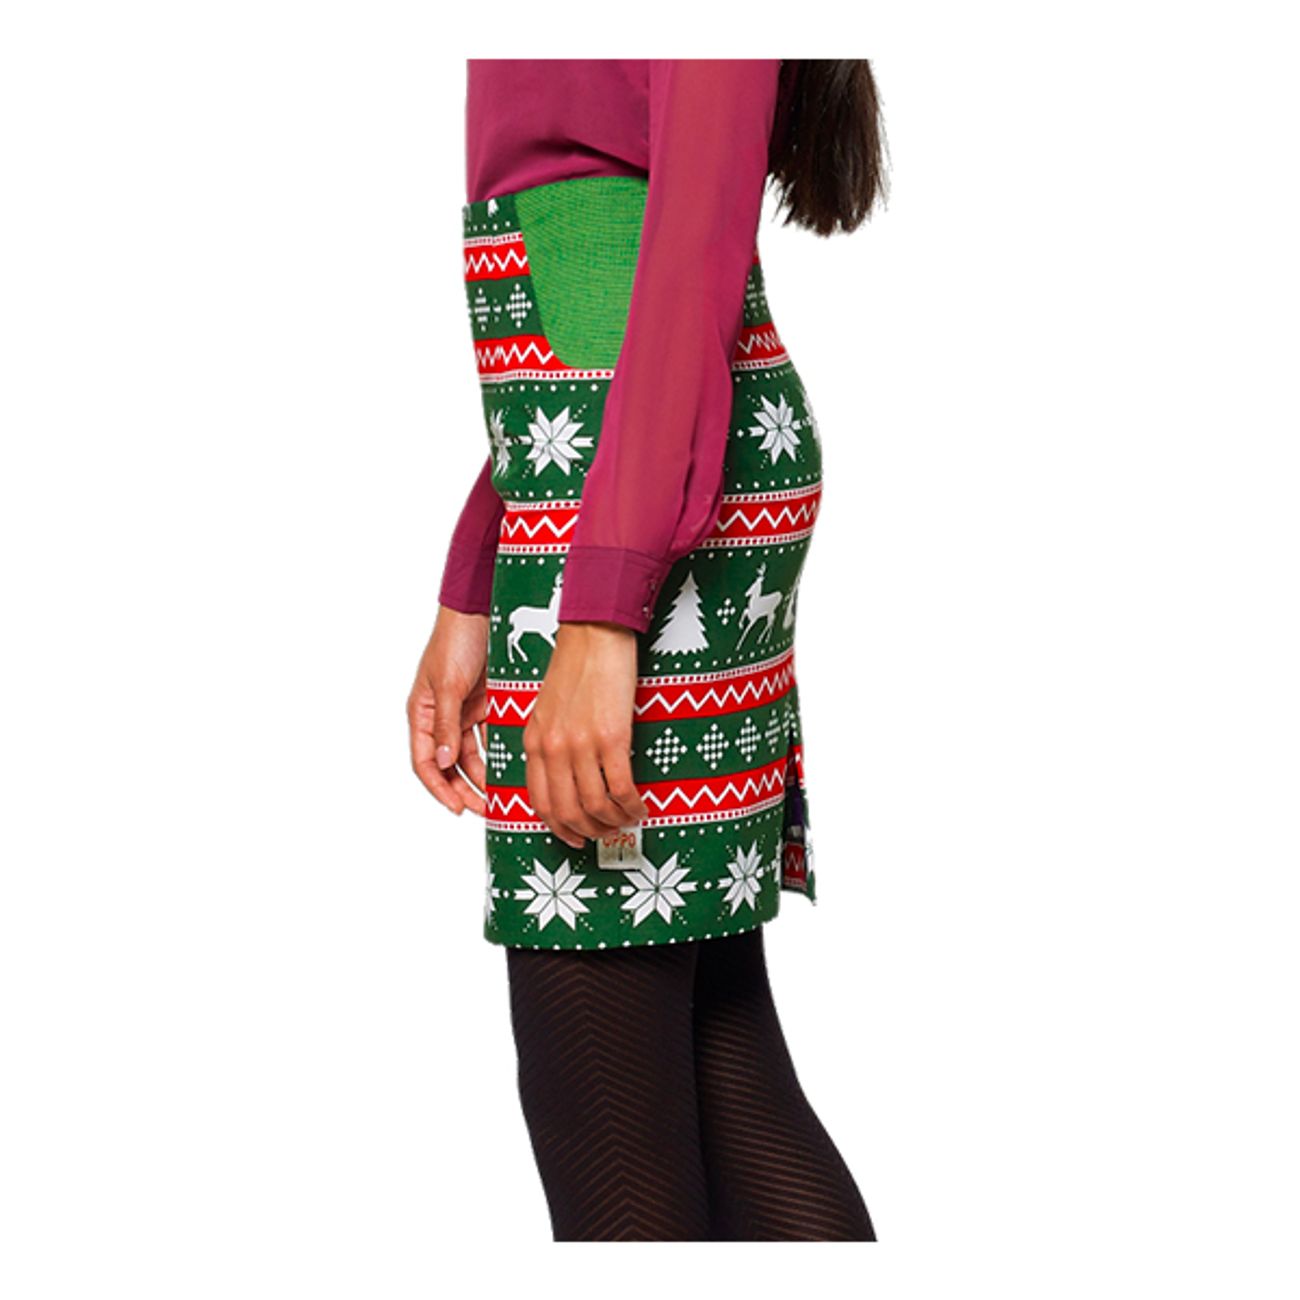 opposuits-festive-girl-kostym-75598-4